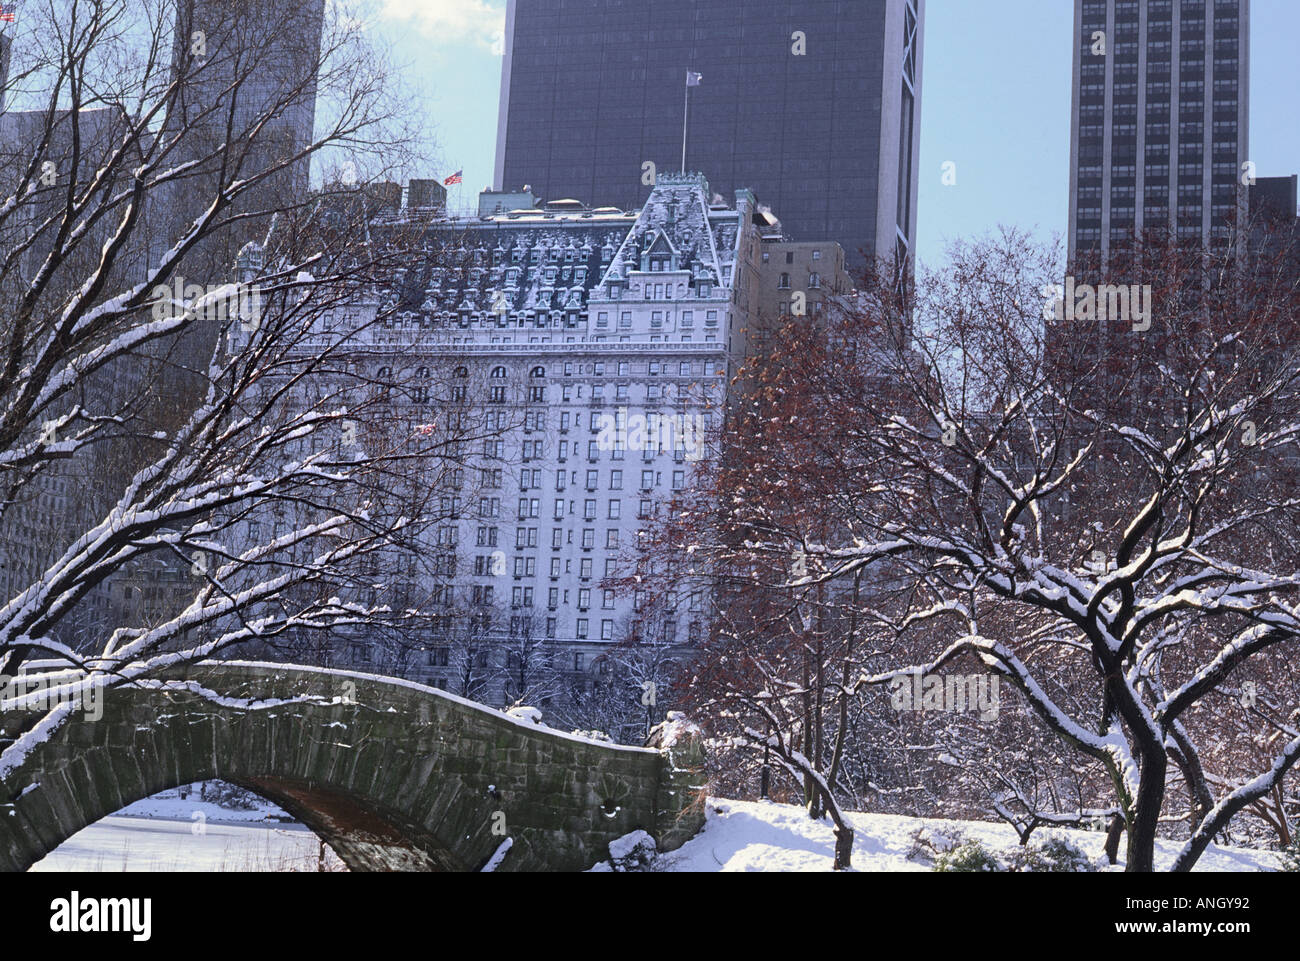 Plaza Hotel face à New York parc central neige paysage sur Central Park South. Gratte-ciel et pont Gapstow. ÉTATS-UNIS Banque D'Images